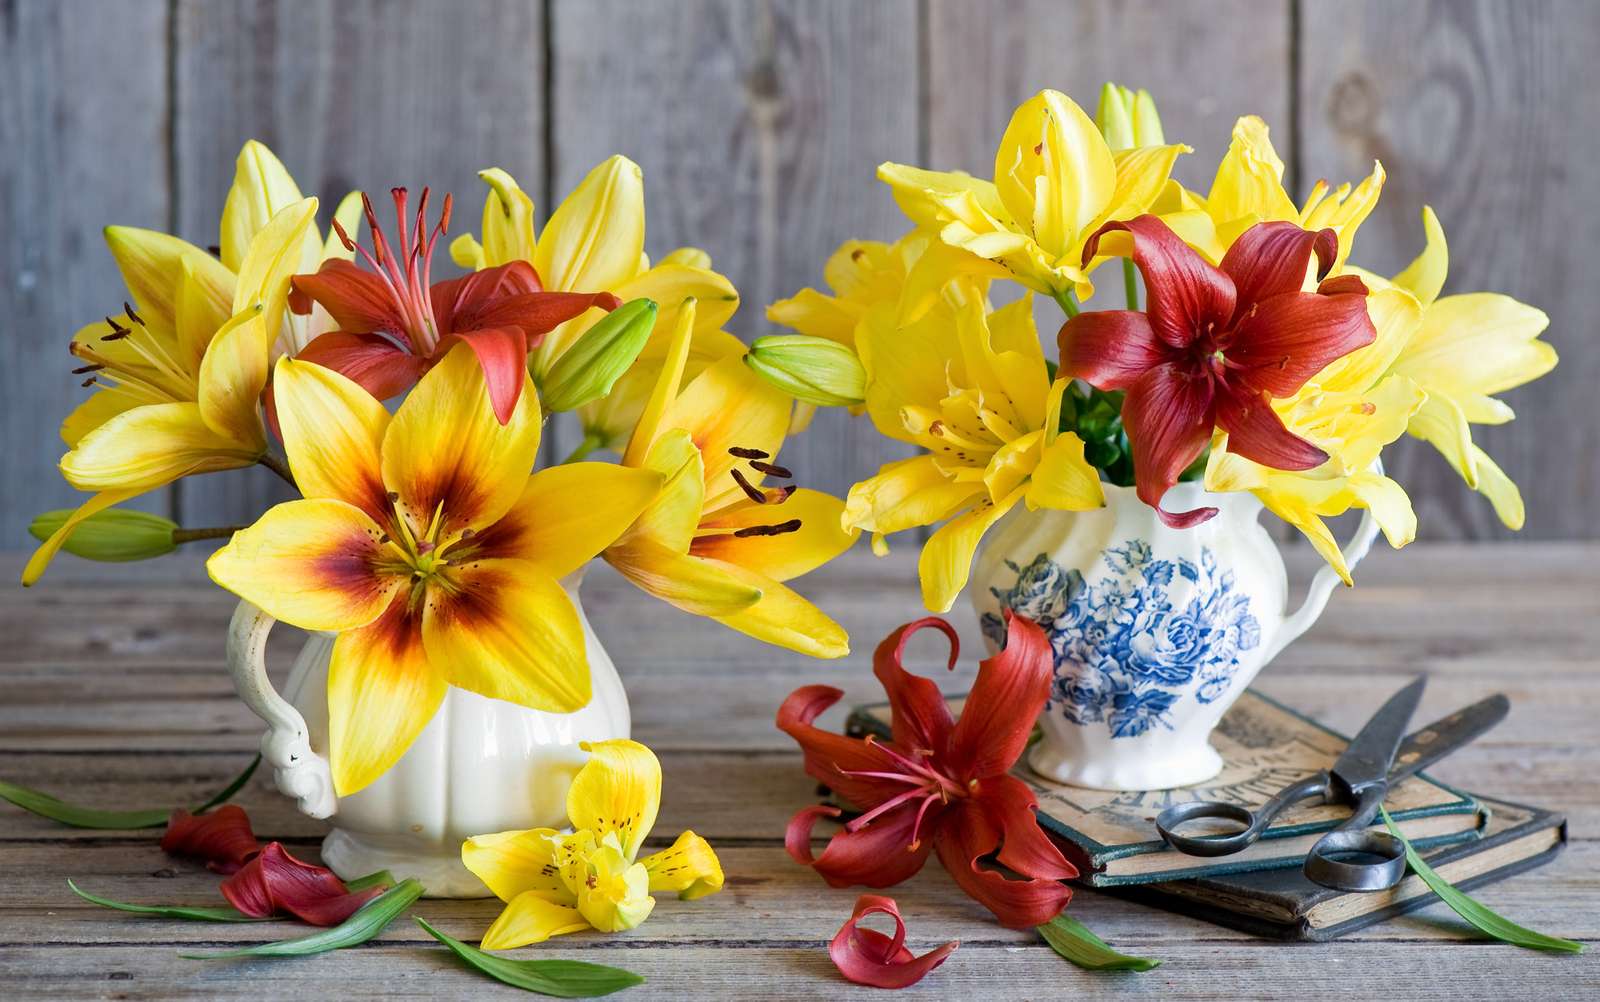 Flowers in jugs jigsaw puzzle online